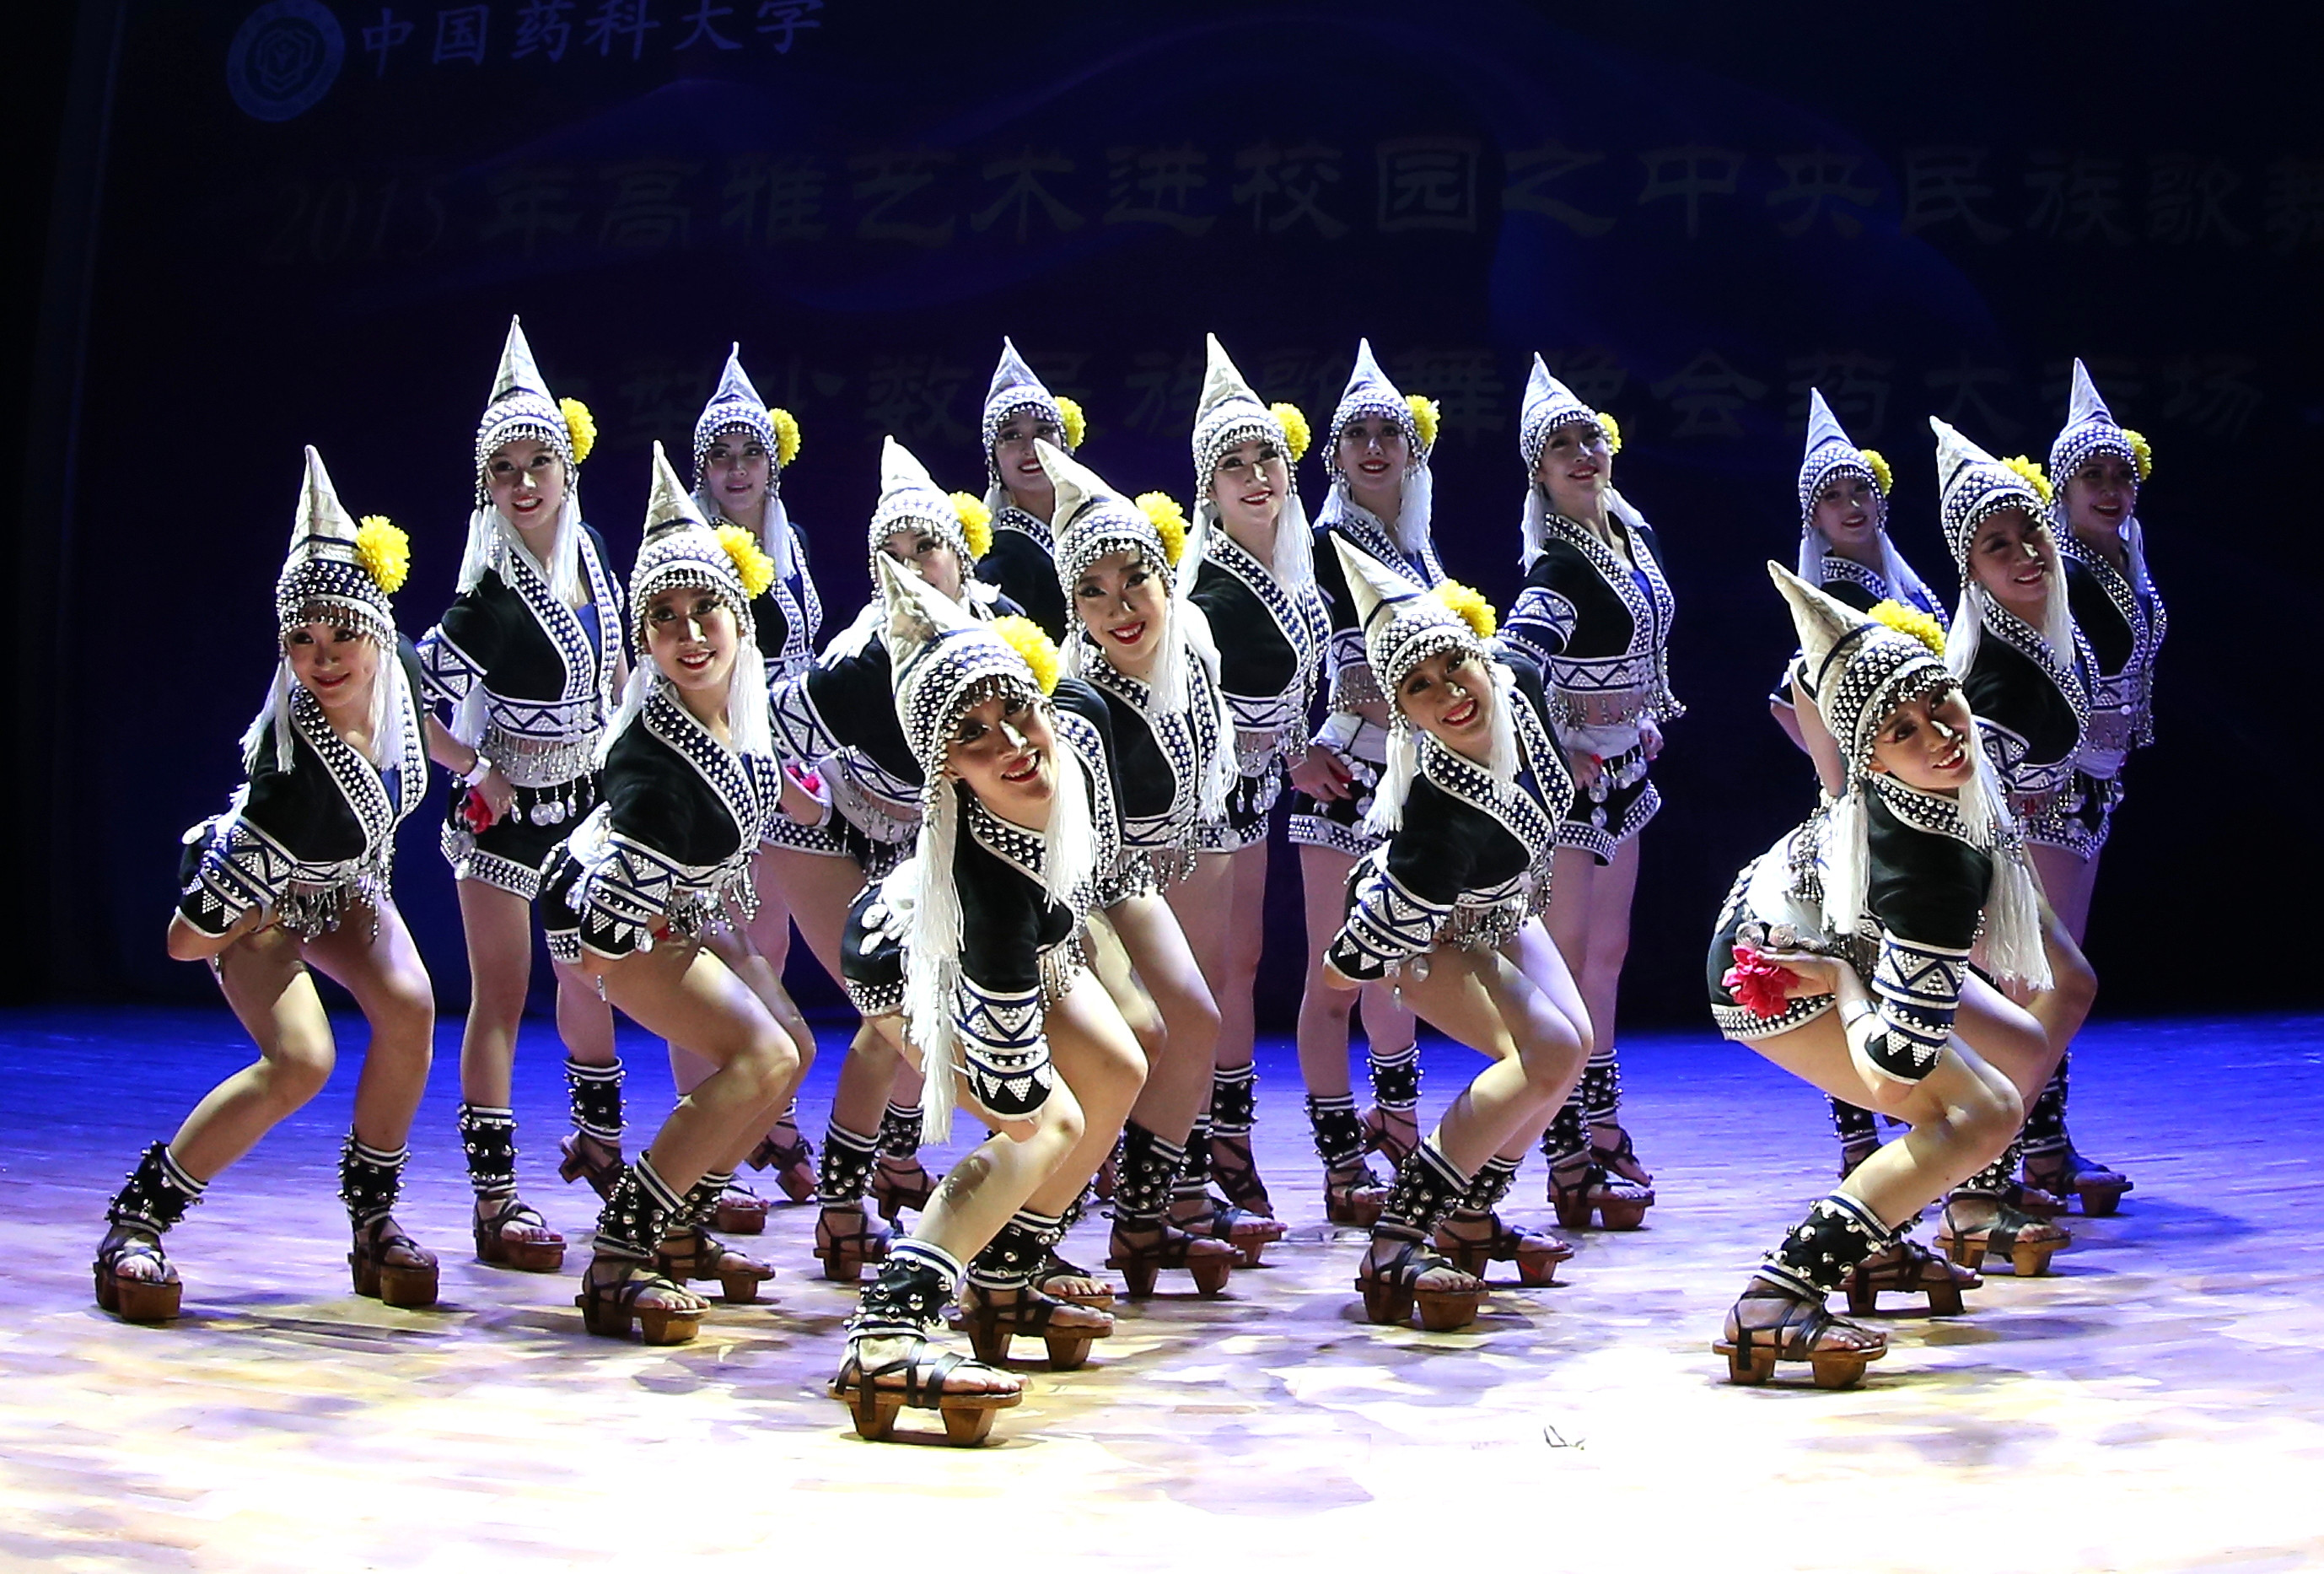 中央民族歌舞团《弦歌逐梦——西部丝路之旅音乐会》